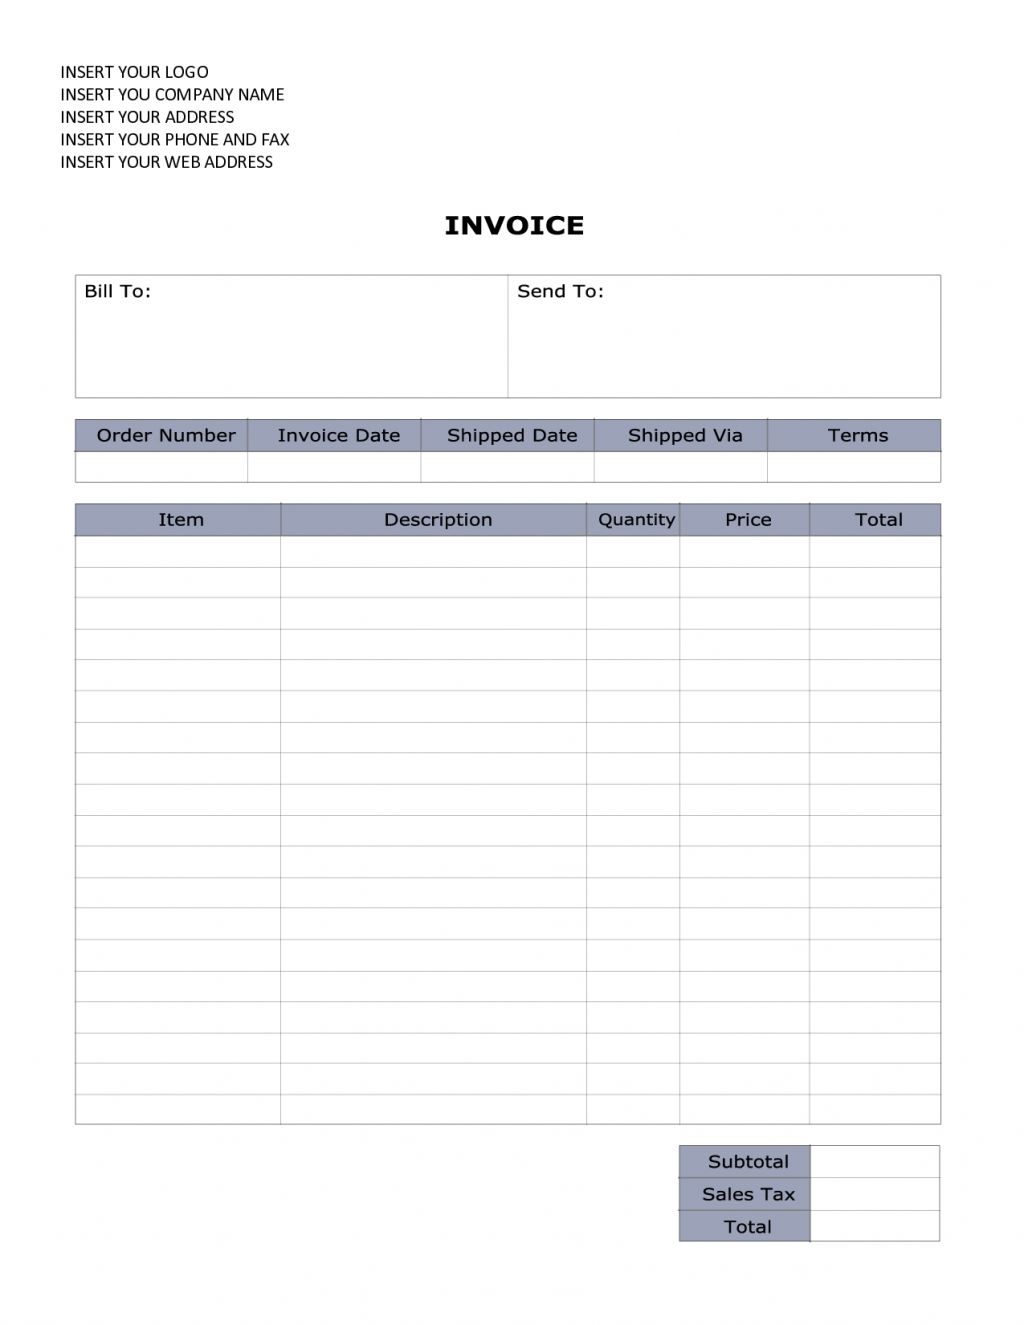 word document invoice invoice word document invoice template word document download 1024 X 1325